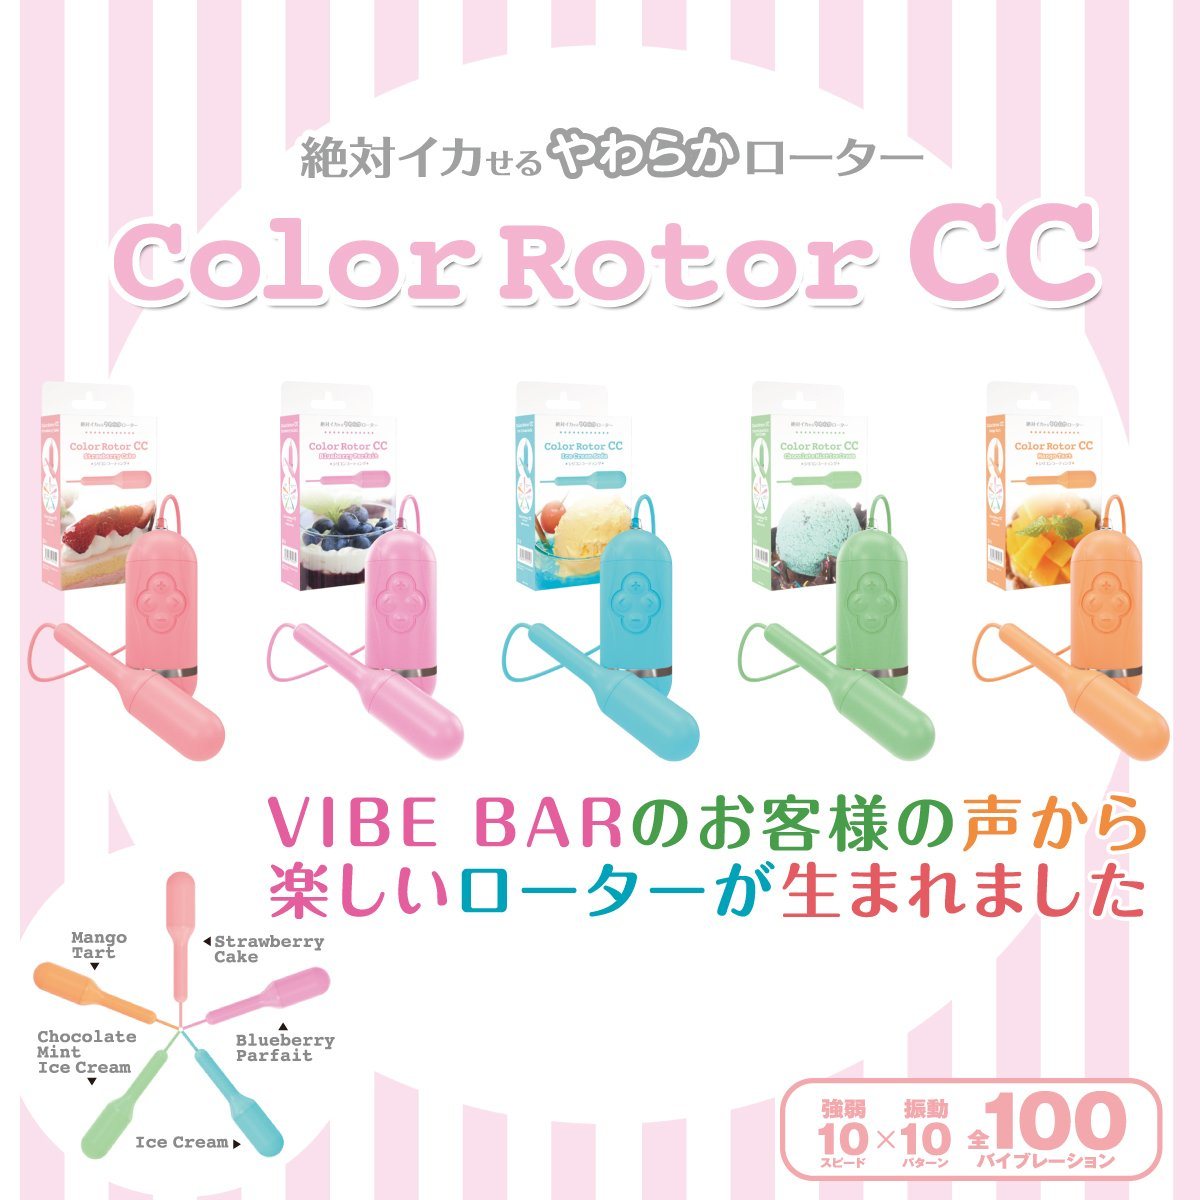 SSI JAPAN Color Rotor CC 薄荷朱古力有線震蛋 有線震蛋 購買